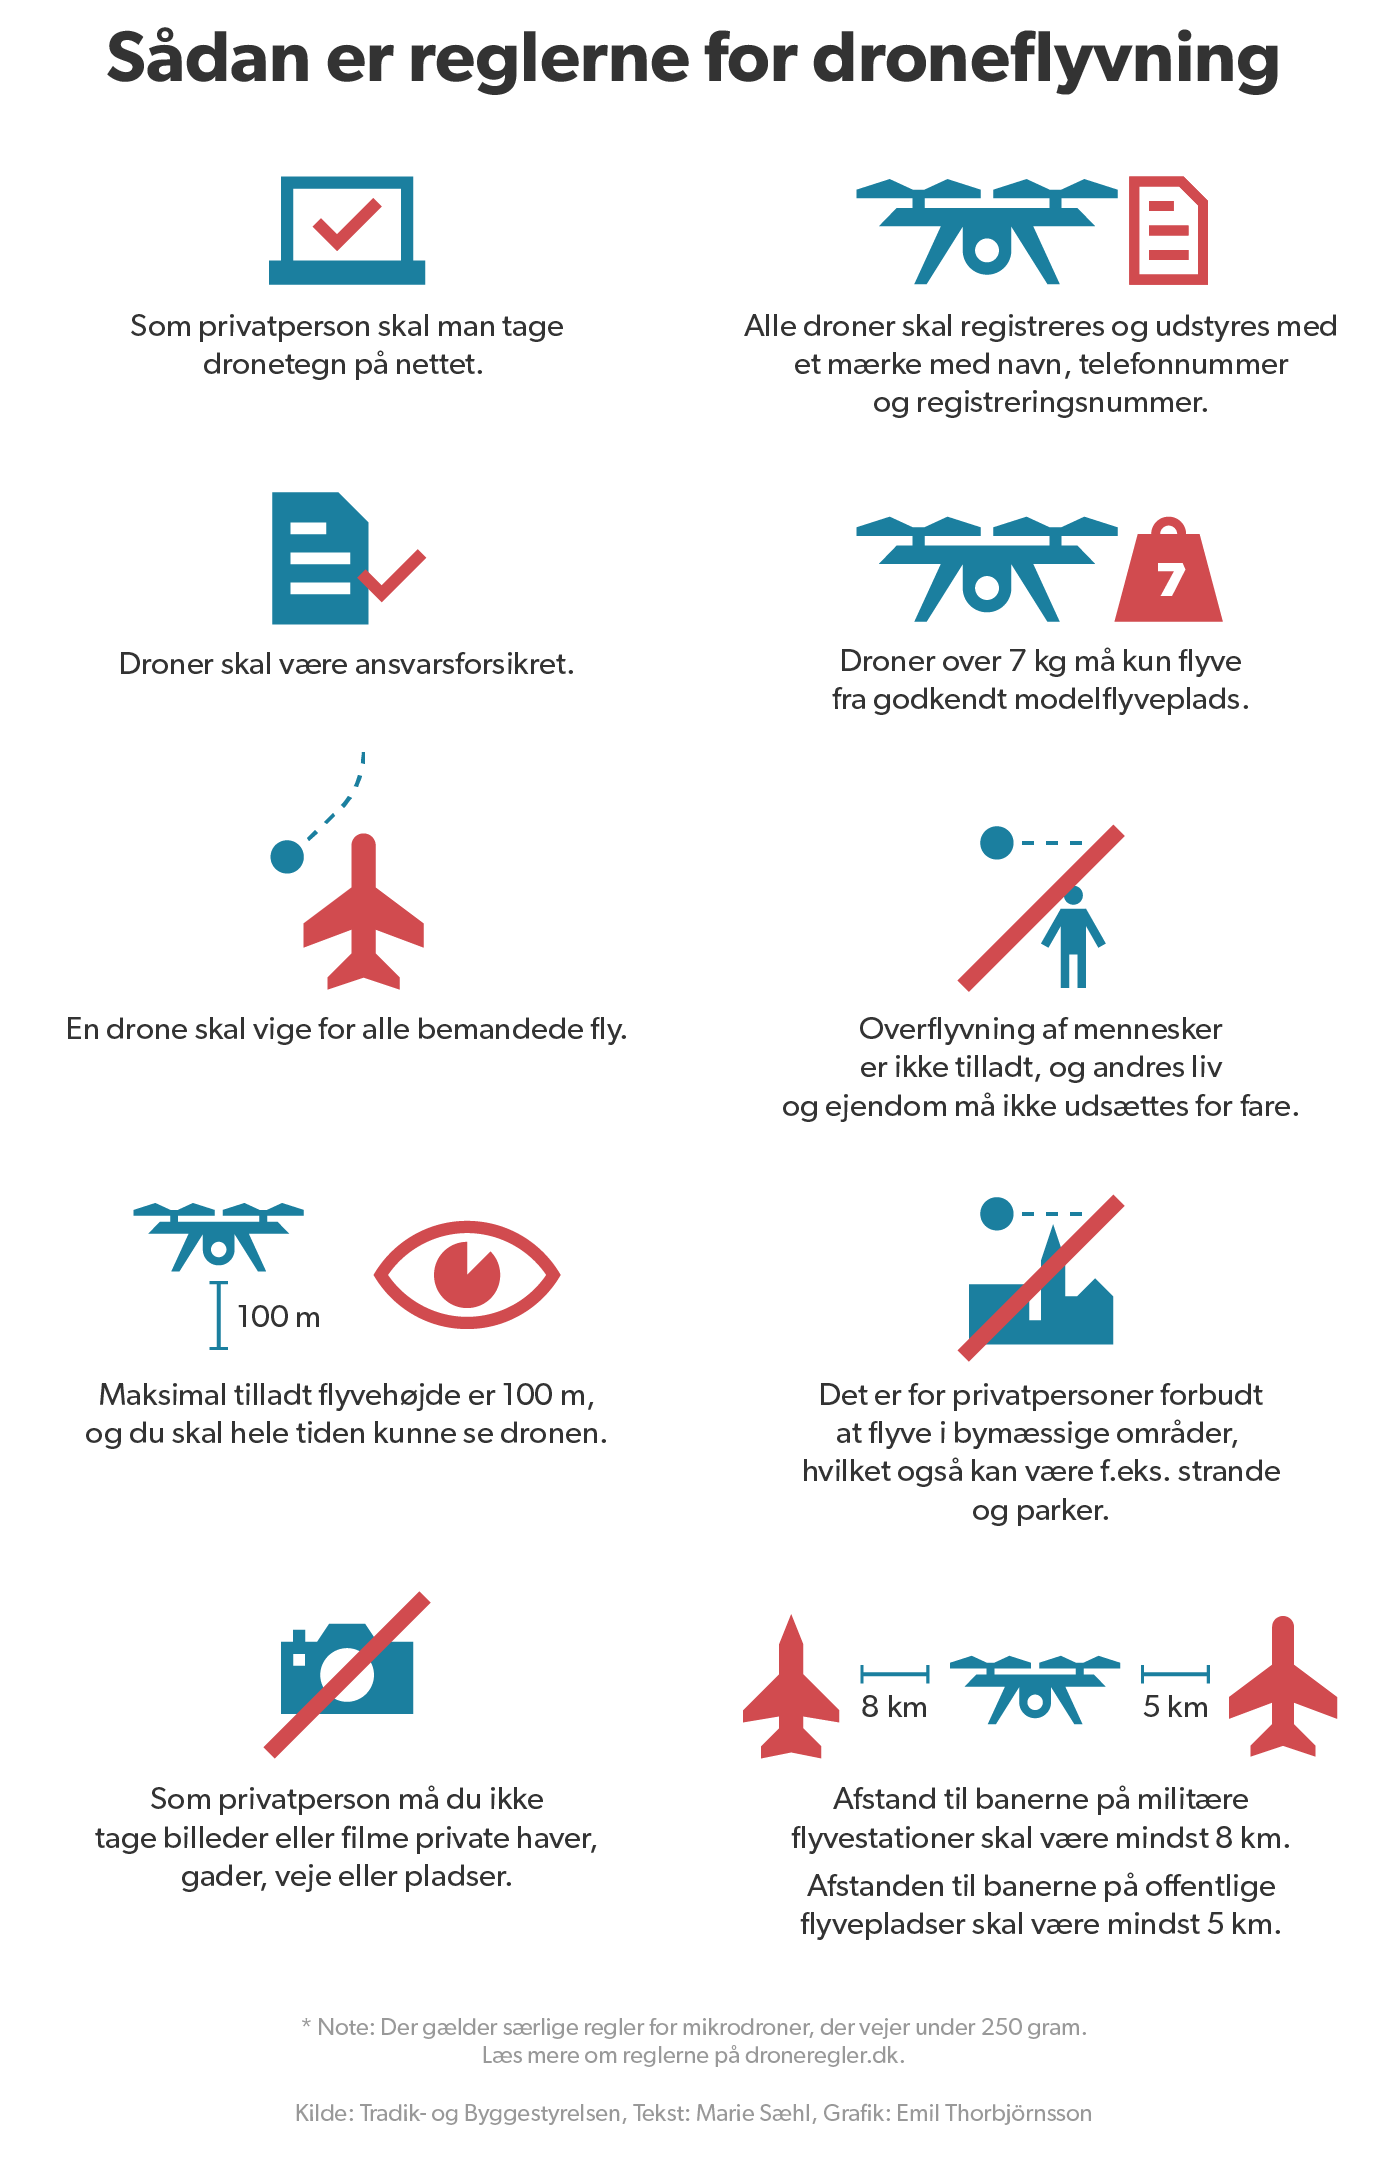 Flere droner for tæt på danske lufthavne | Indland | DR